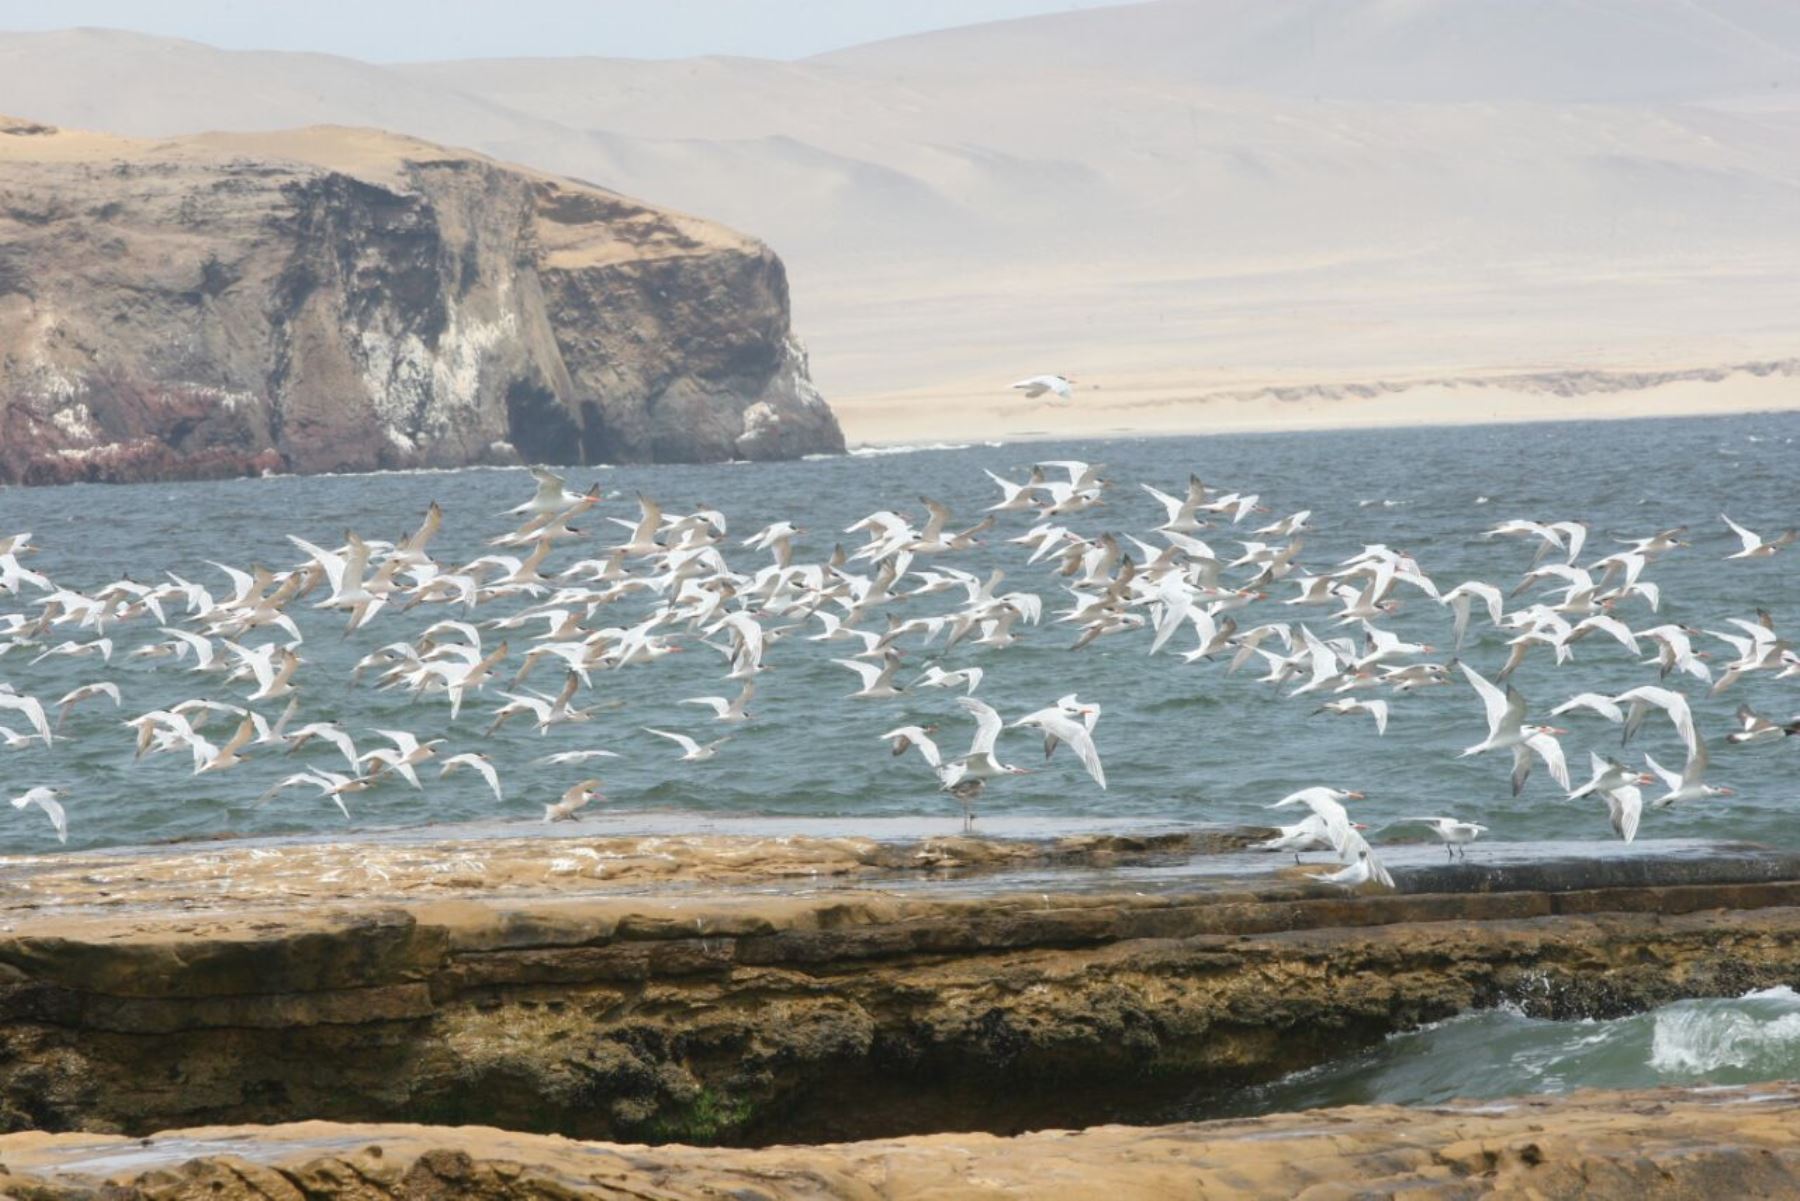 Reserva Nacional de Paracas cumple 44 años conservando el ecosistema marino costero de Ica. ANDINA/Jhony Laurente